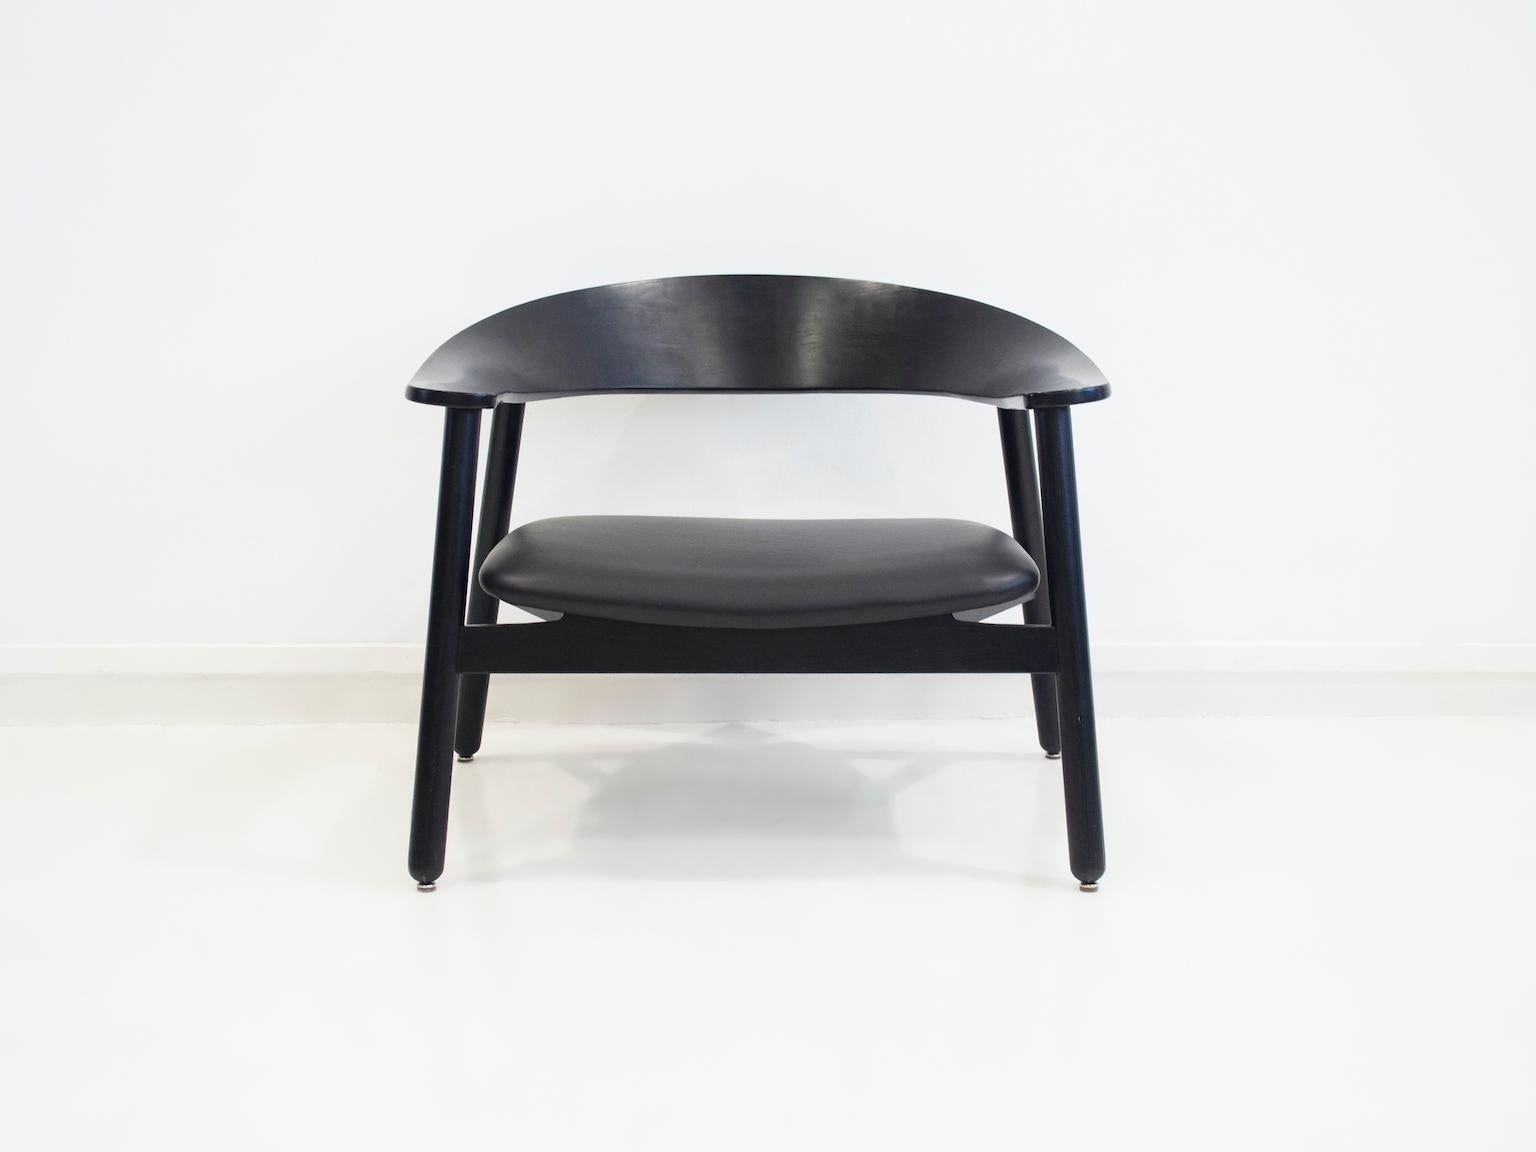 Loungesessel, Modell 102, entworfen von Henrik Bønnelycke und hergestellt aus dampfgebogener, schwarz gebeizter Eiche. Der Sitz ist mit schwarzem Leder bezogen. Weiche Linien, bequemer runder Rücken und Armlehnen.